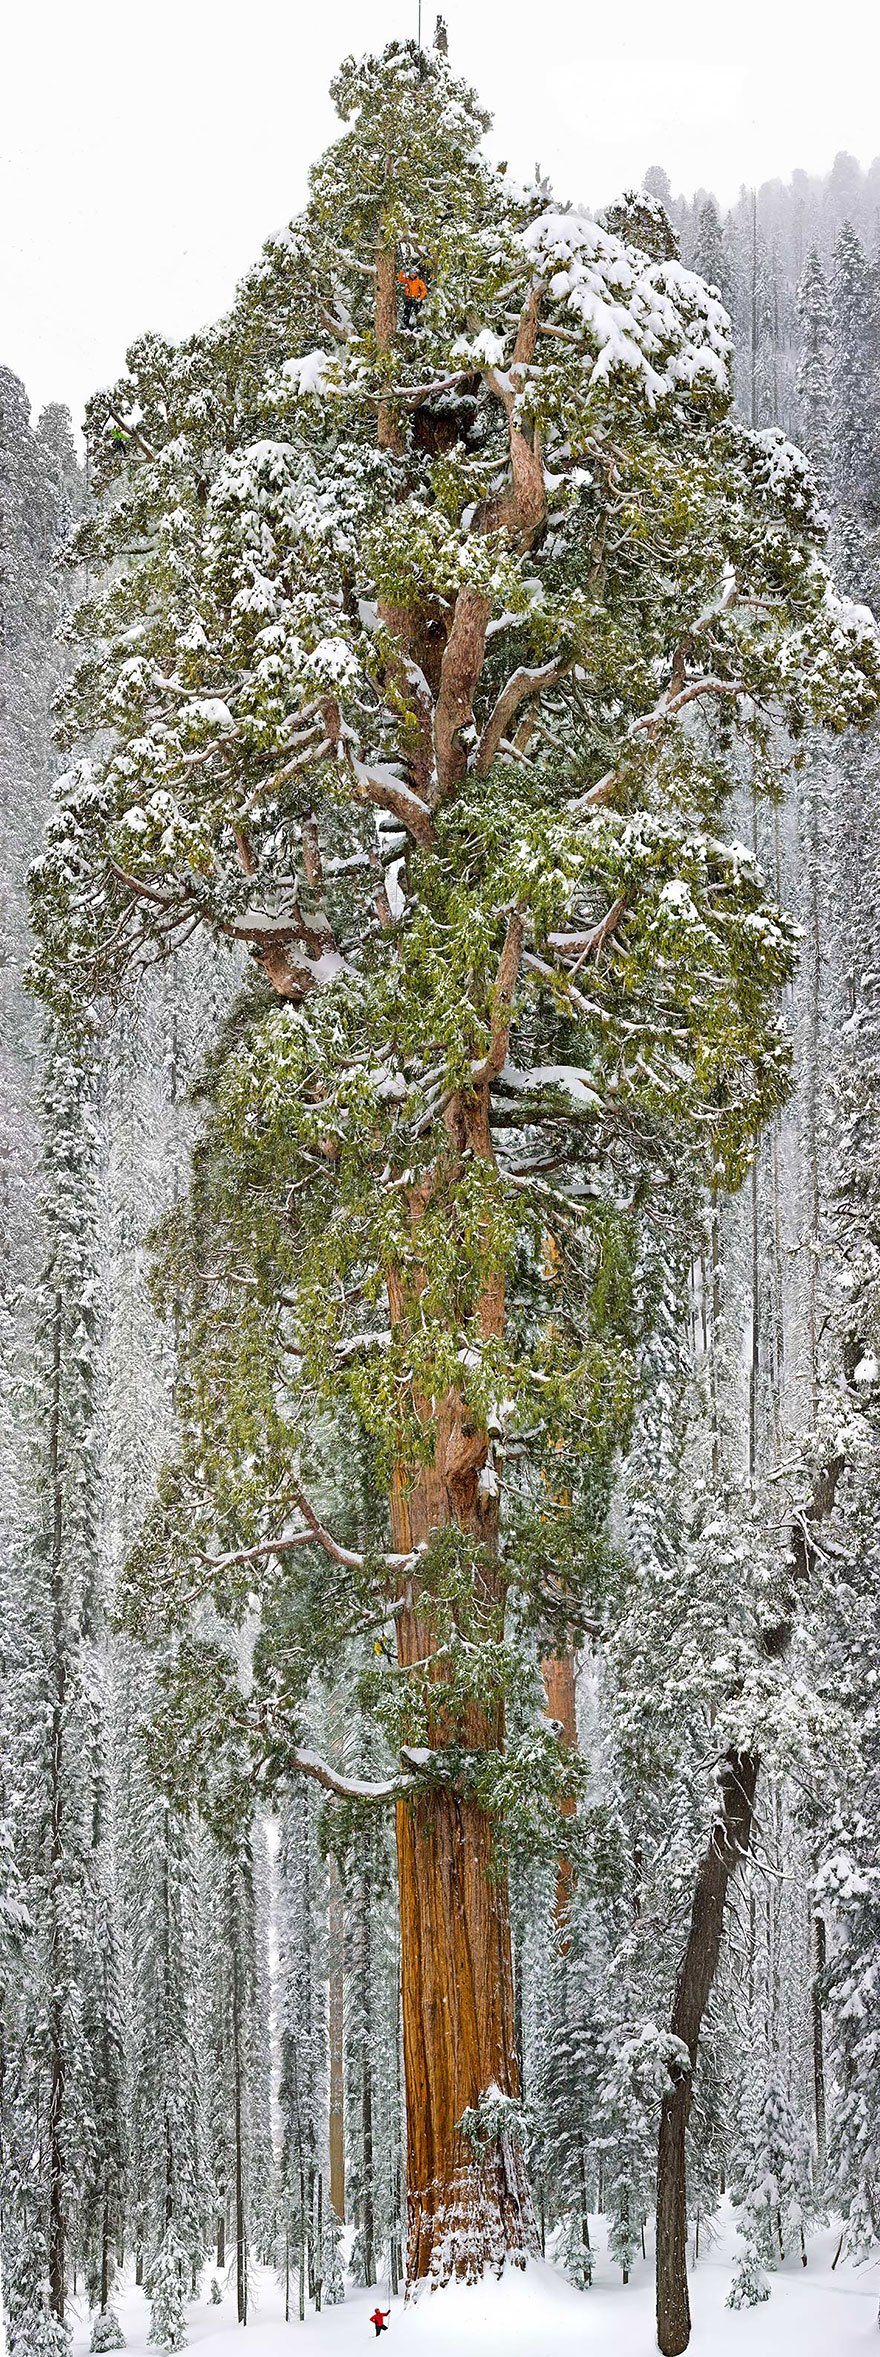 LES PLUS BEAUX ARBRES DU MONDE - ARBRES - Le fameux Séquoia "President" - Californie - Etats-Unis - Il a près de 3240 ans et mesure 75 mètres de haut